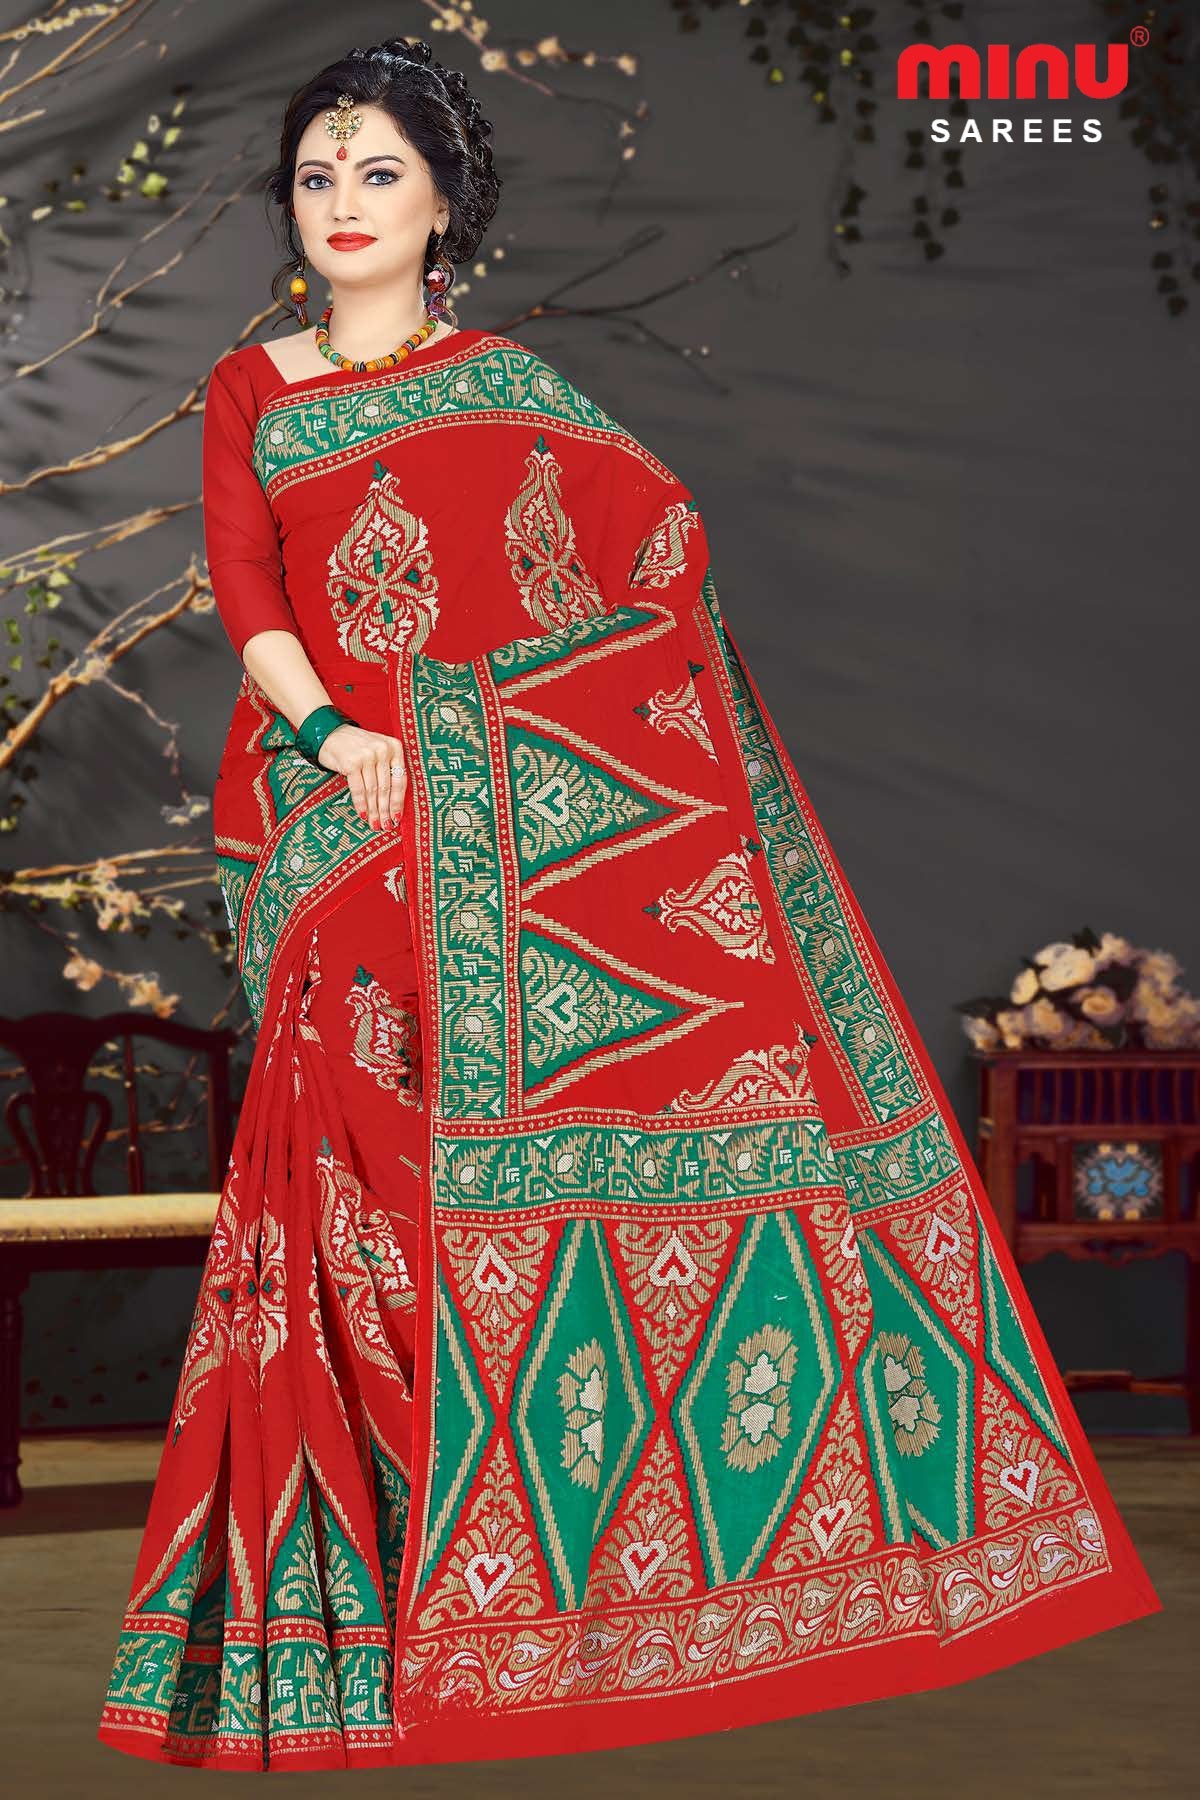 Women looking stunning wearing red printed designed saree